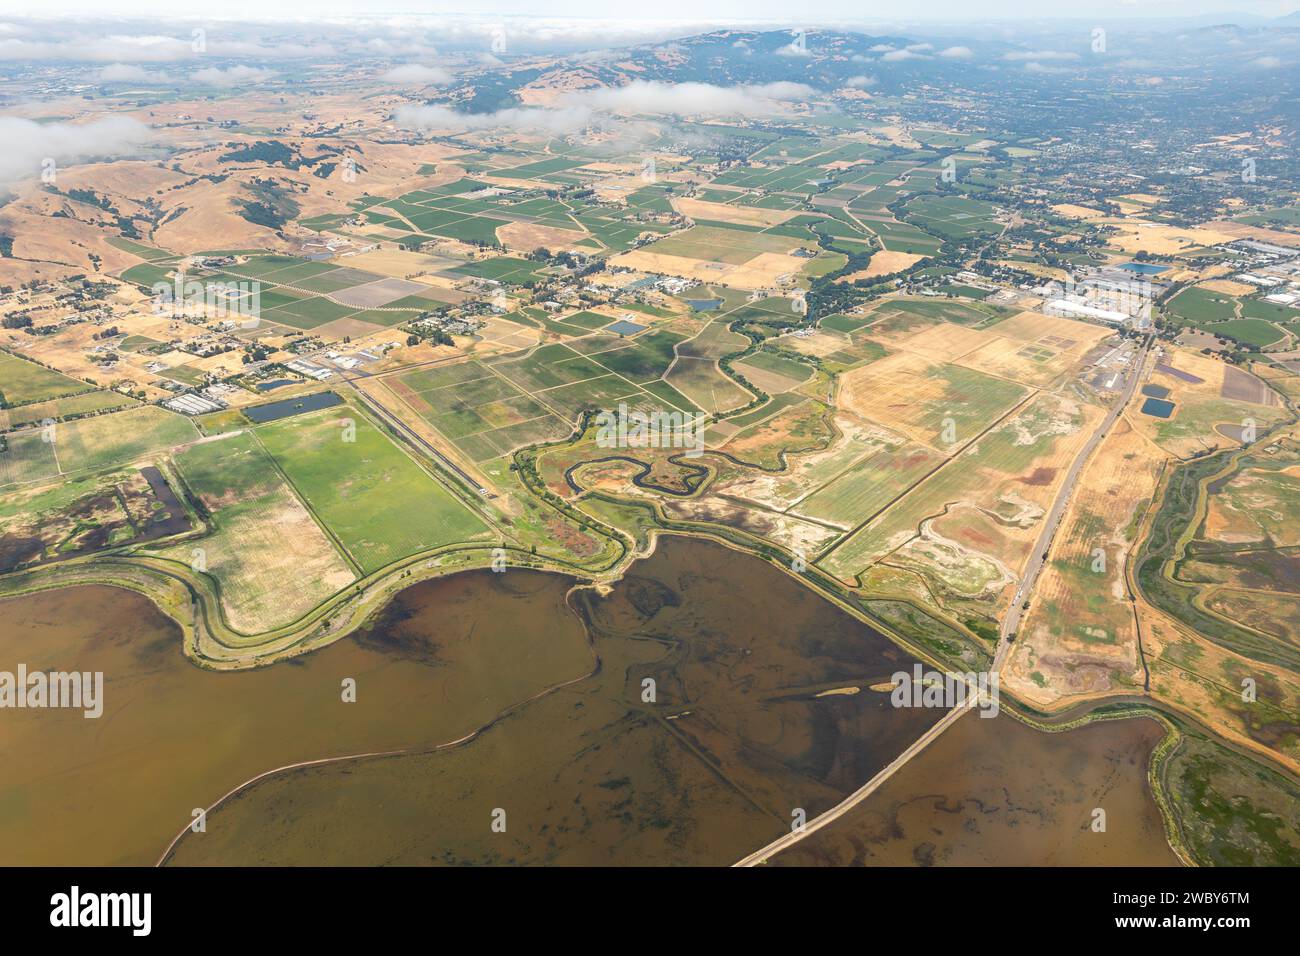 Vue aérienne des motifs des champs agricoles et de la baie de San Francisco où elle rencontre le delta du fleuve Sacramento Banque D'Images